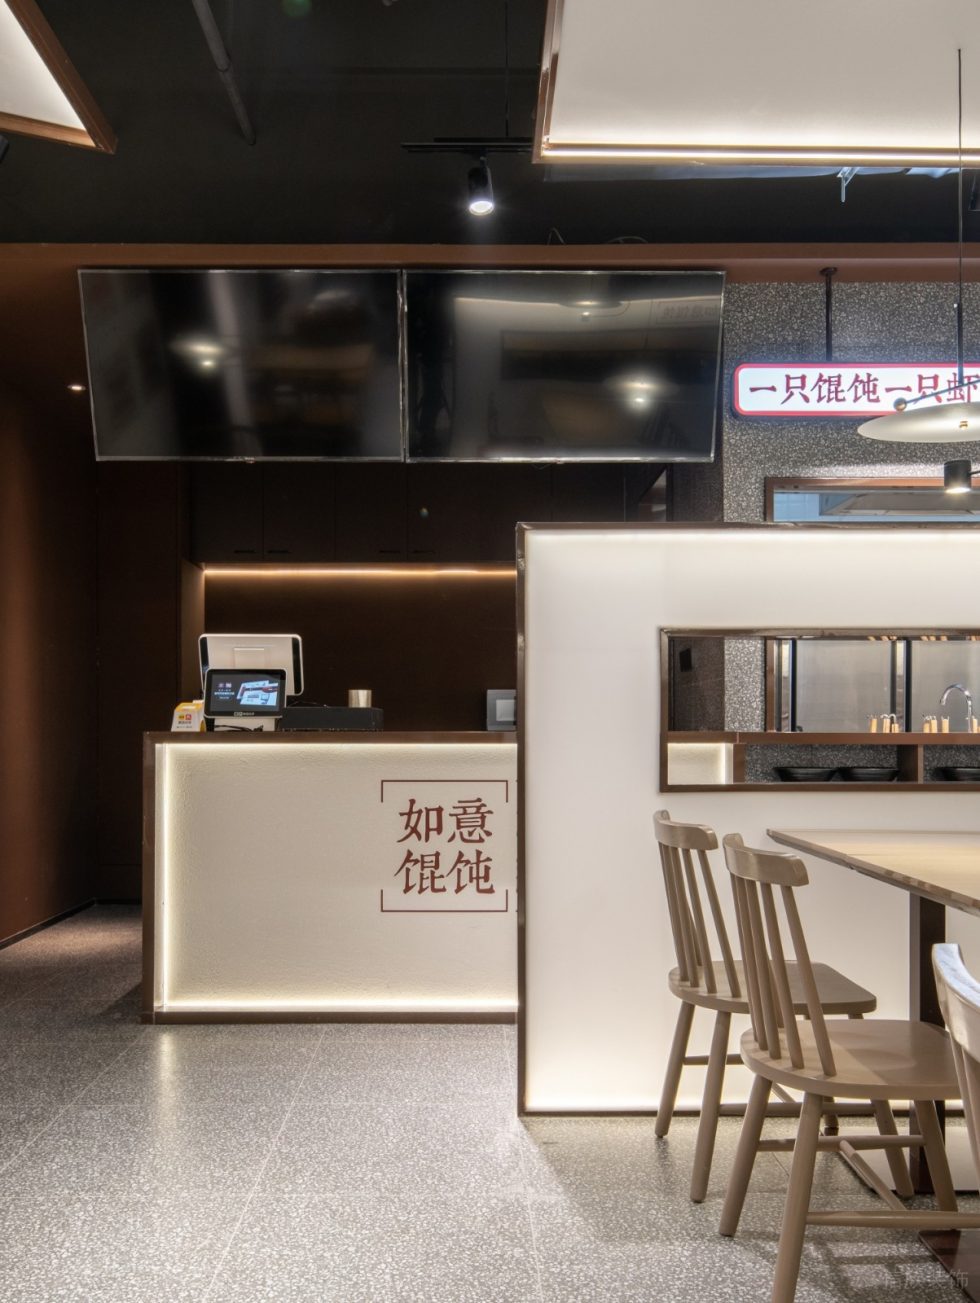 深圳龙岗京基御景时代现代中式风格馄饨面食店装修案例前台